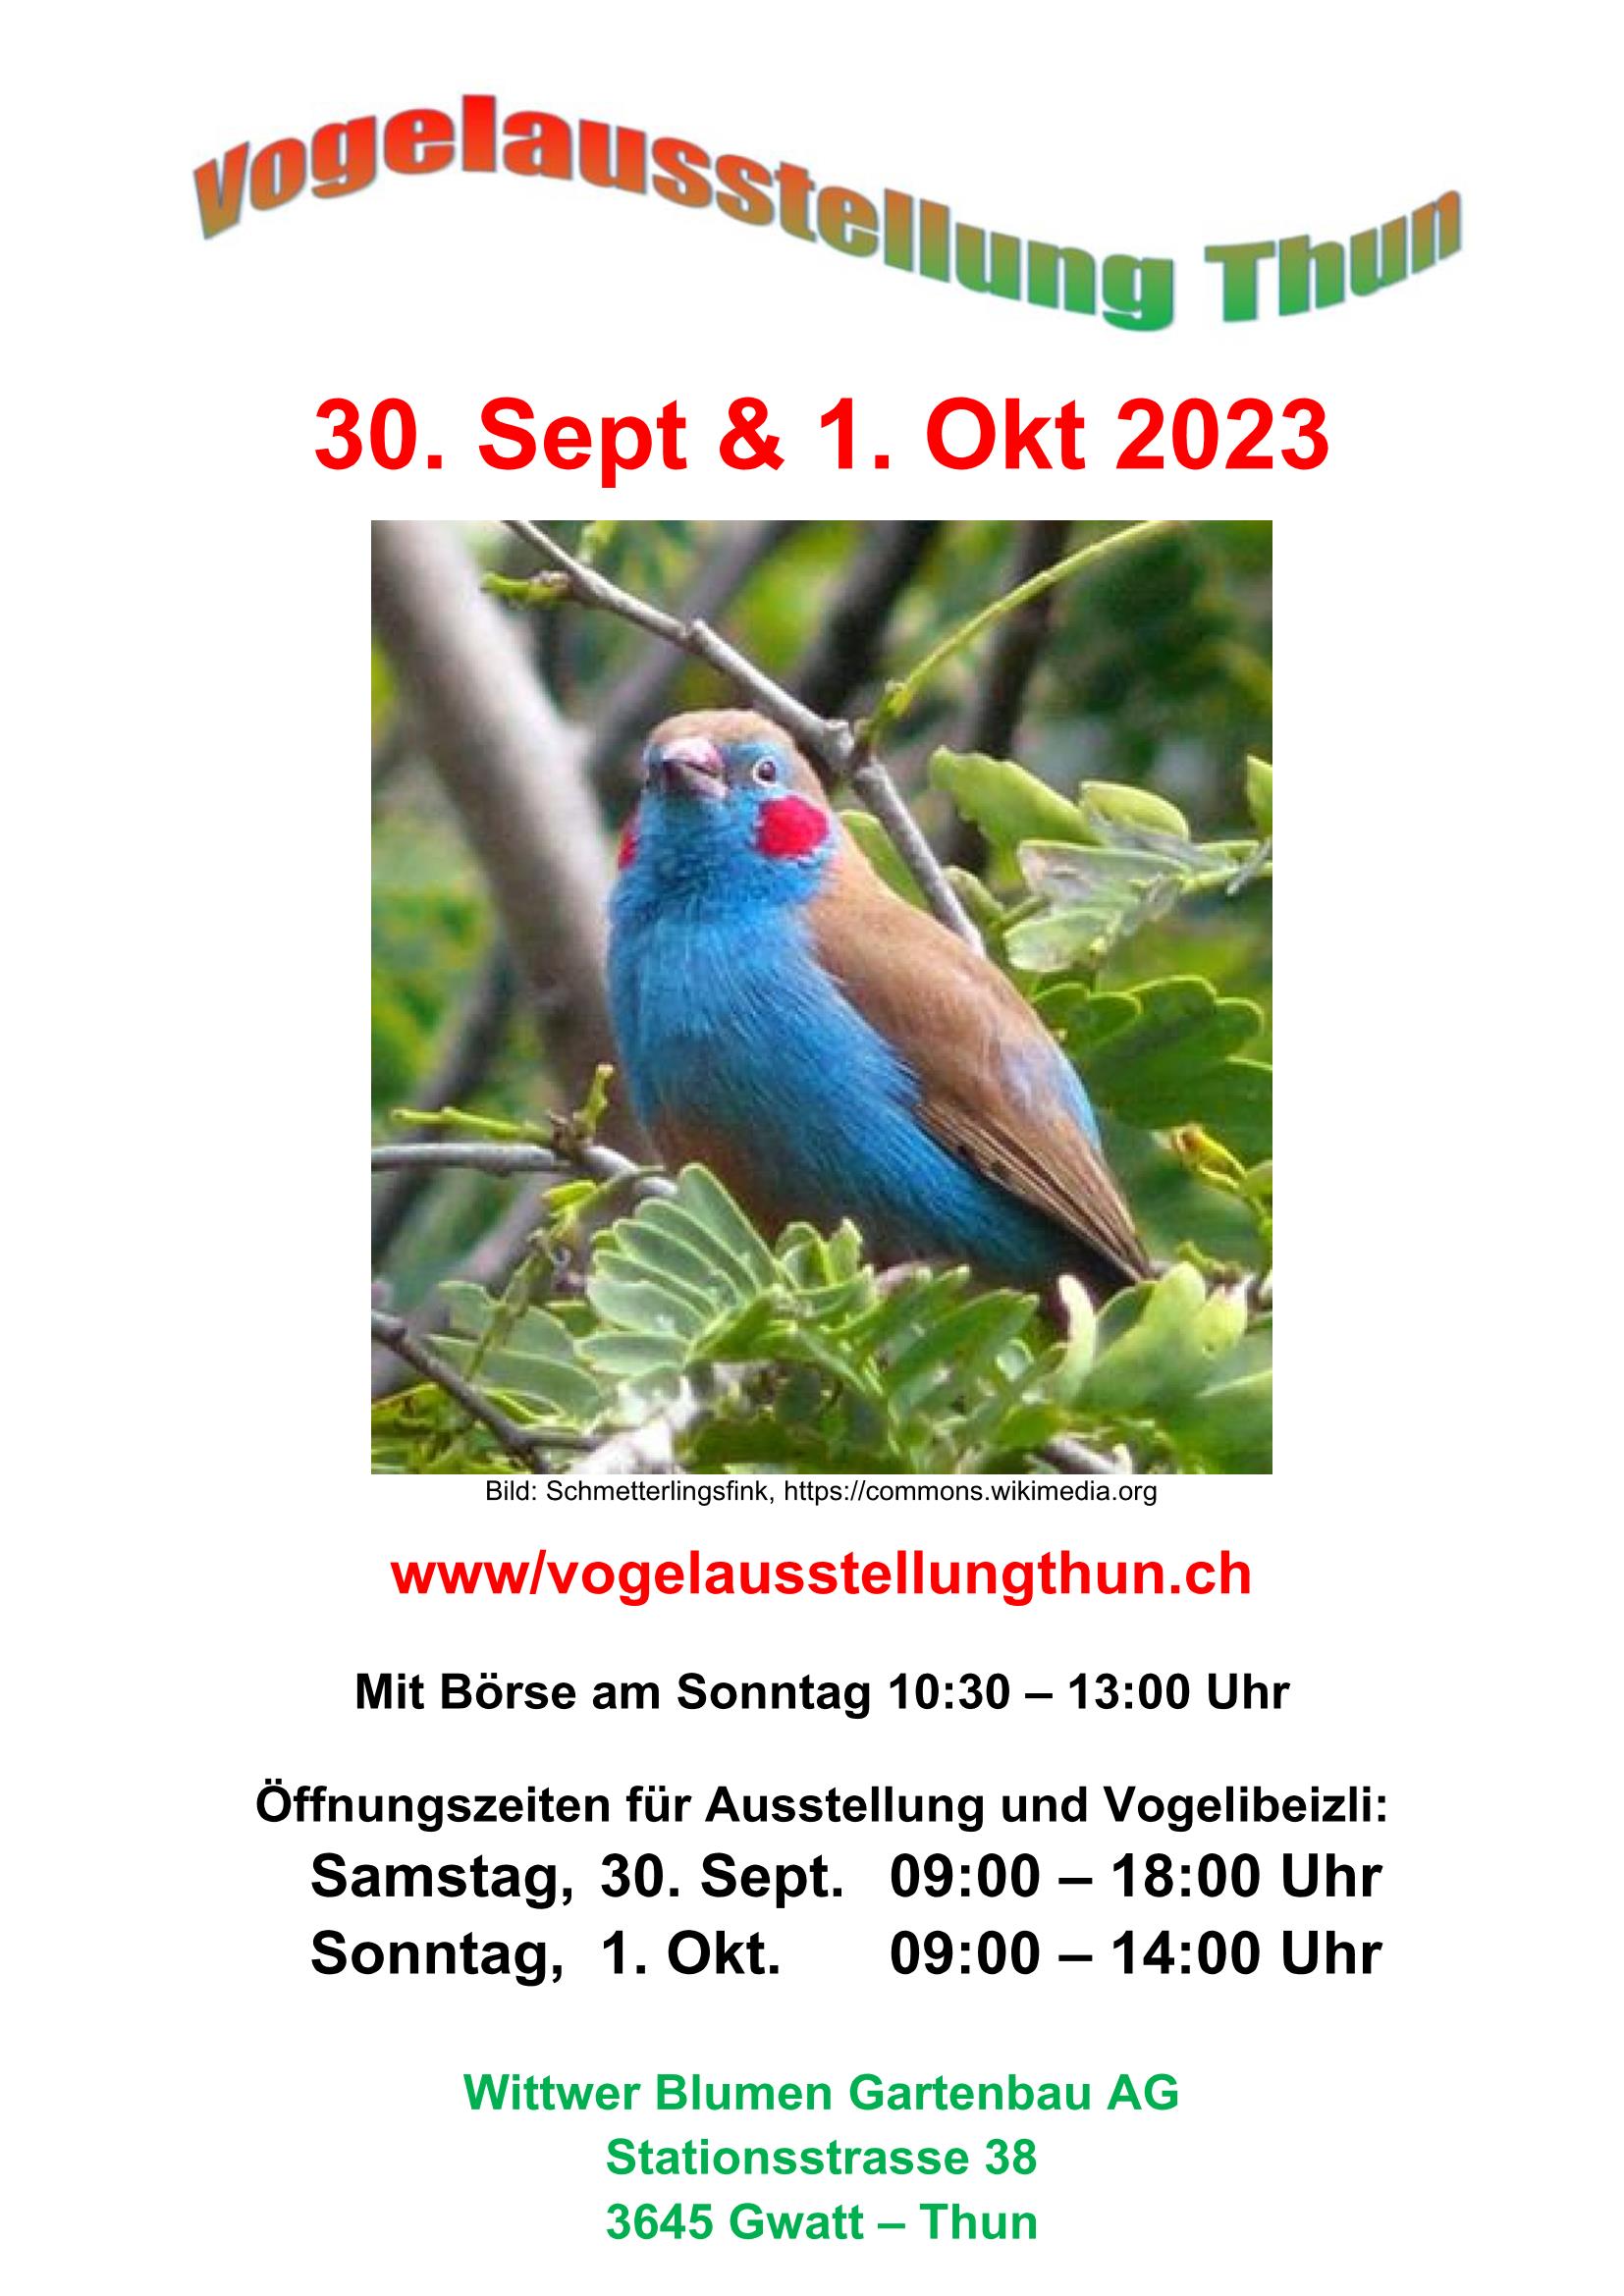 (c) Vogelausstellungthun.ch